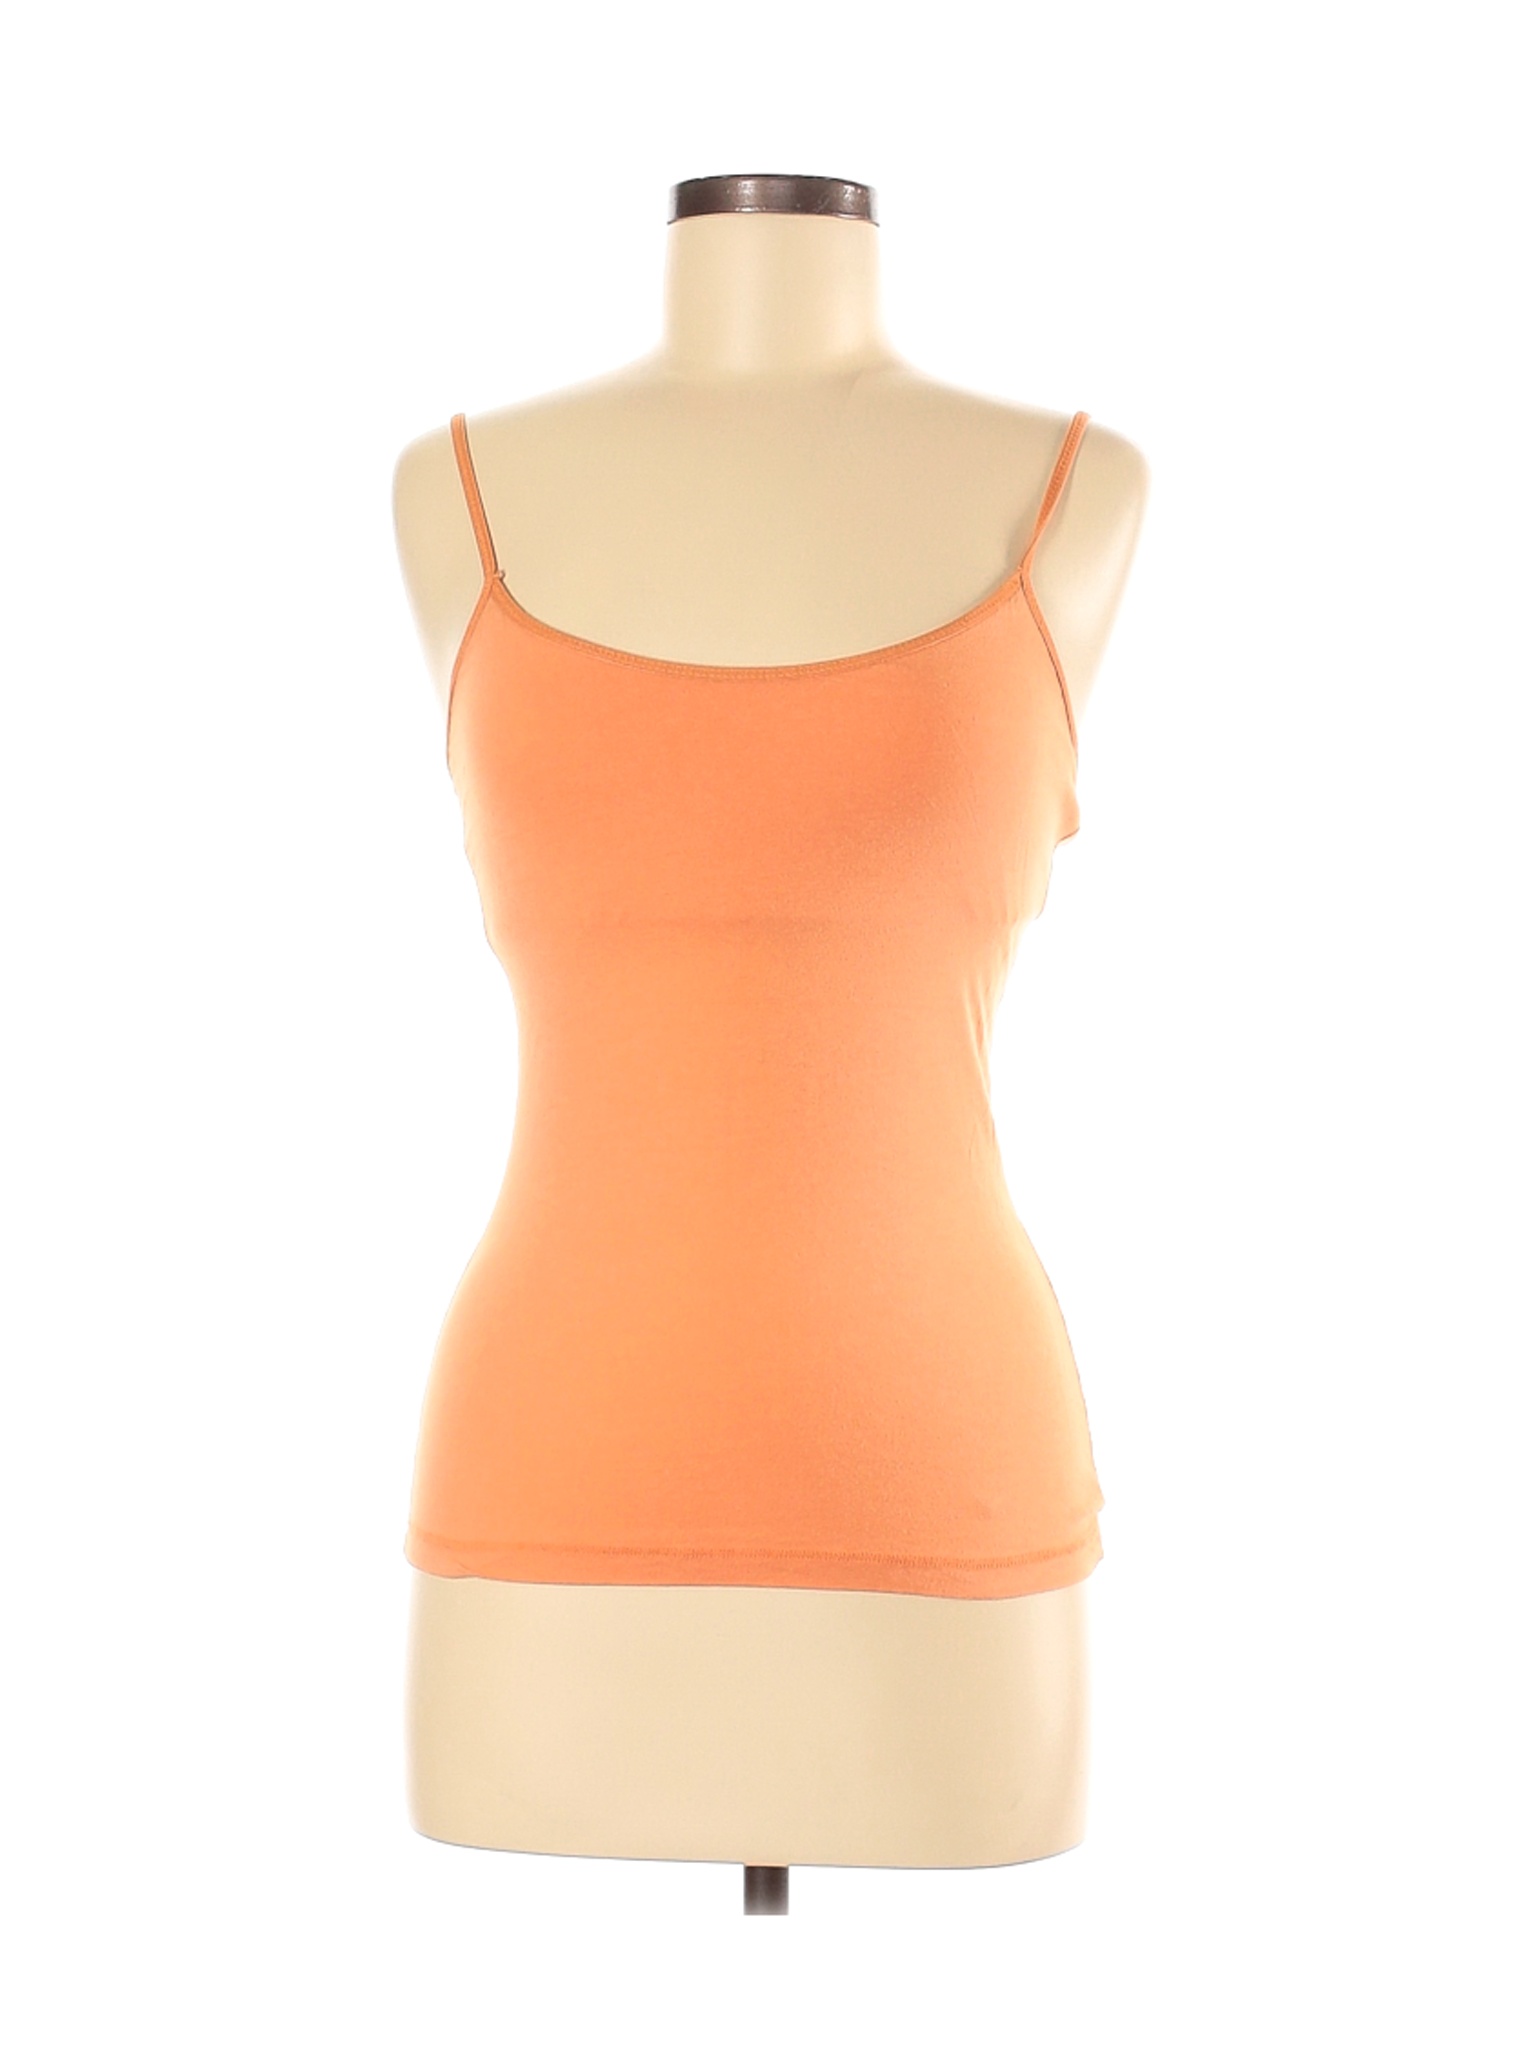 Assorted Brands Women Orange Tank Top M | eBay